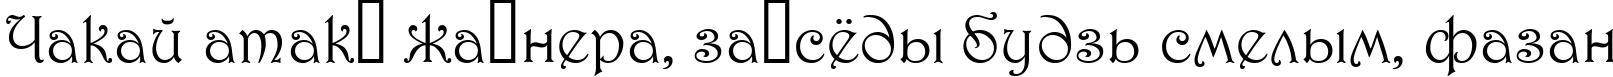 Пример написания шрифтом 1 Harrington M текста на белорусском